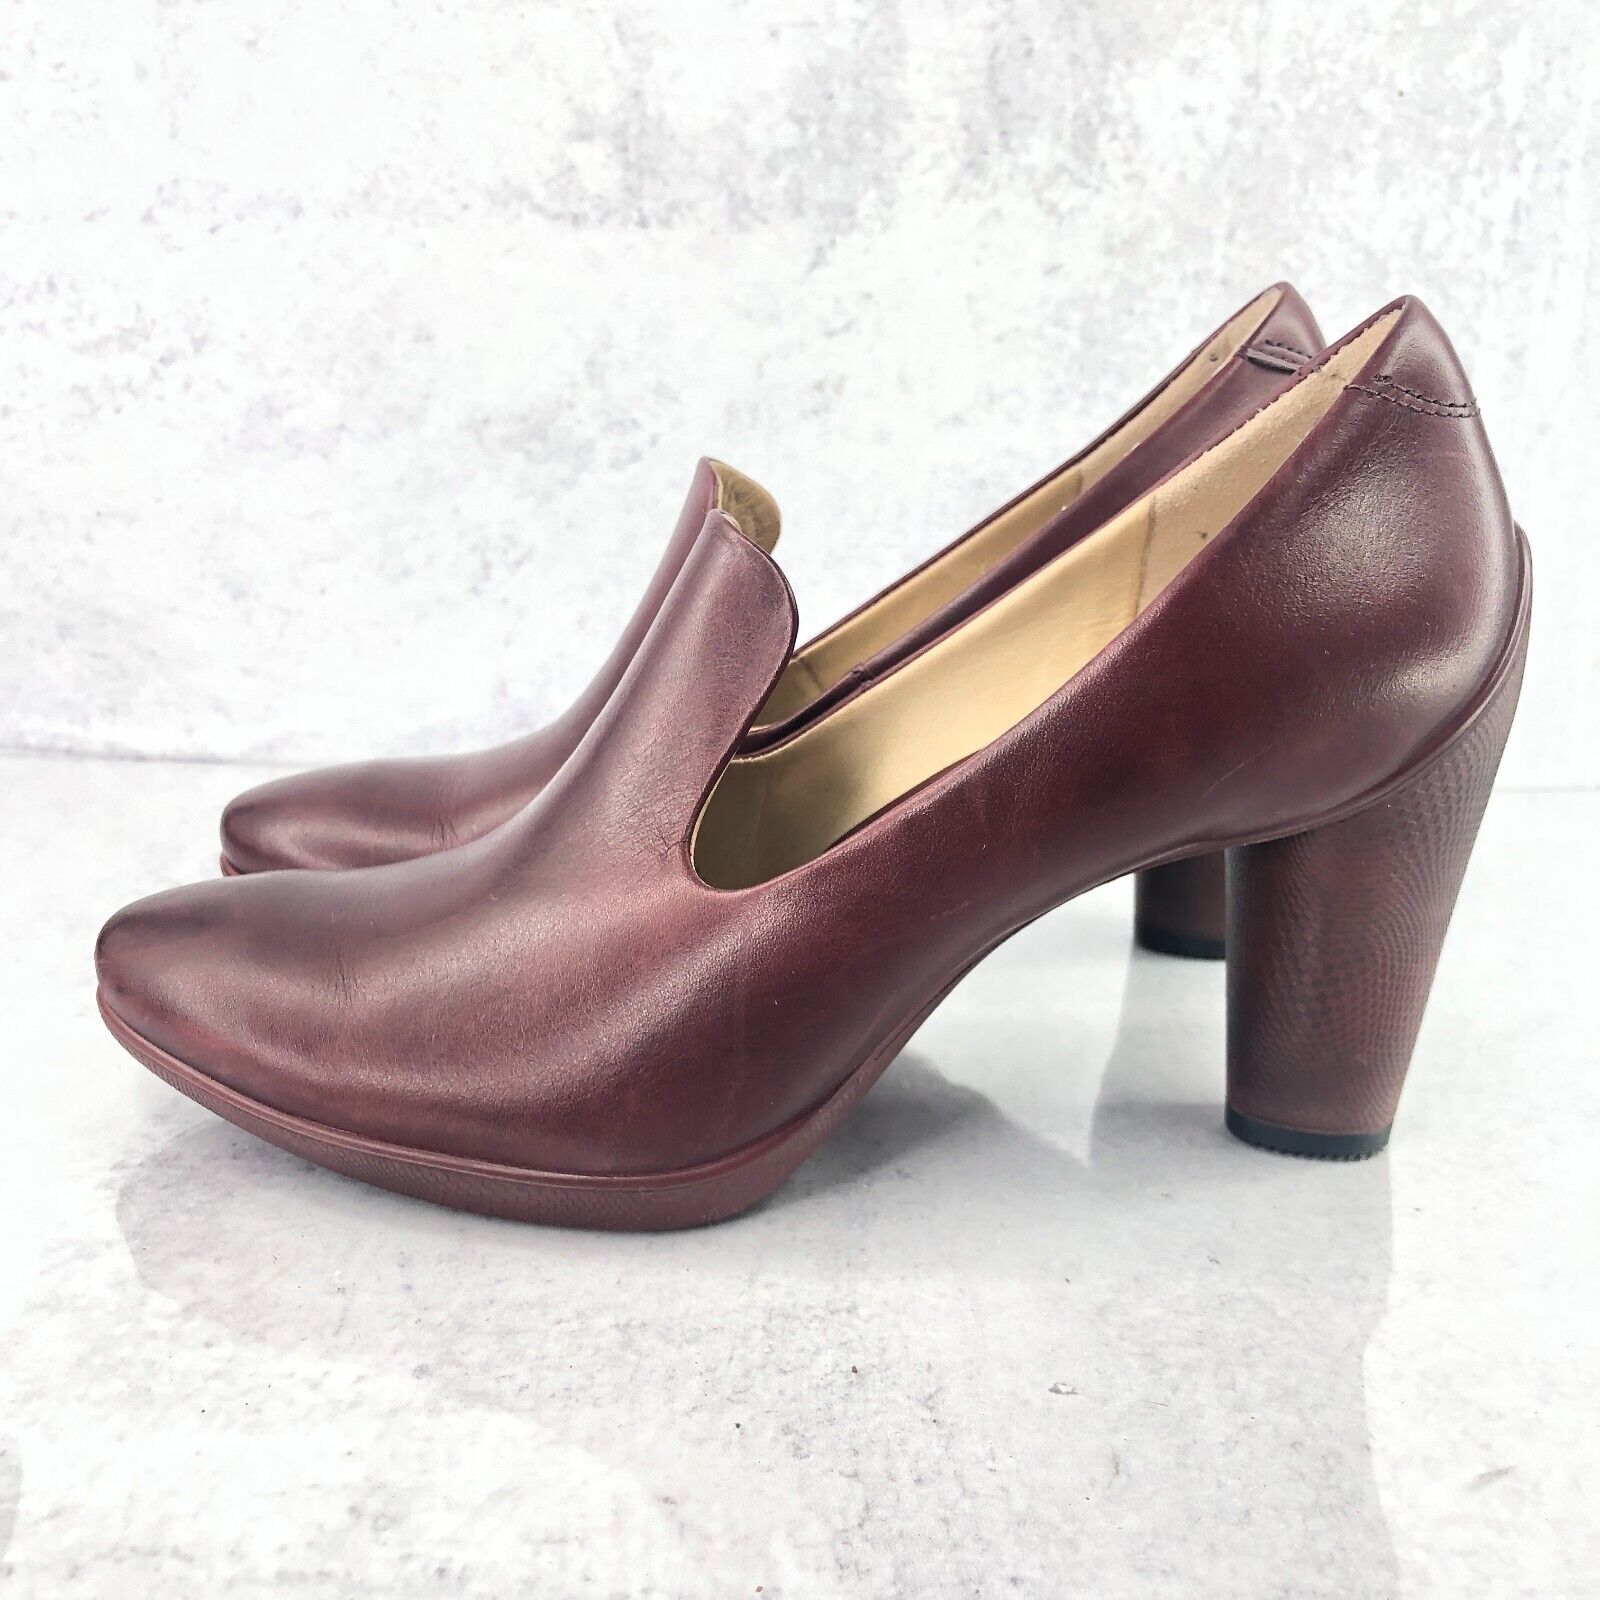 periodieke Vertrek naar vervagen Ecco Women 8 Shoes Red Leather Classic Dress Slip On Pumps | eBay